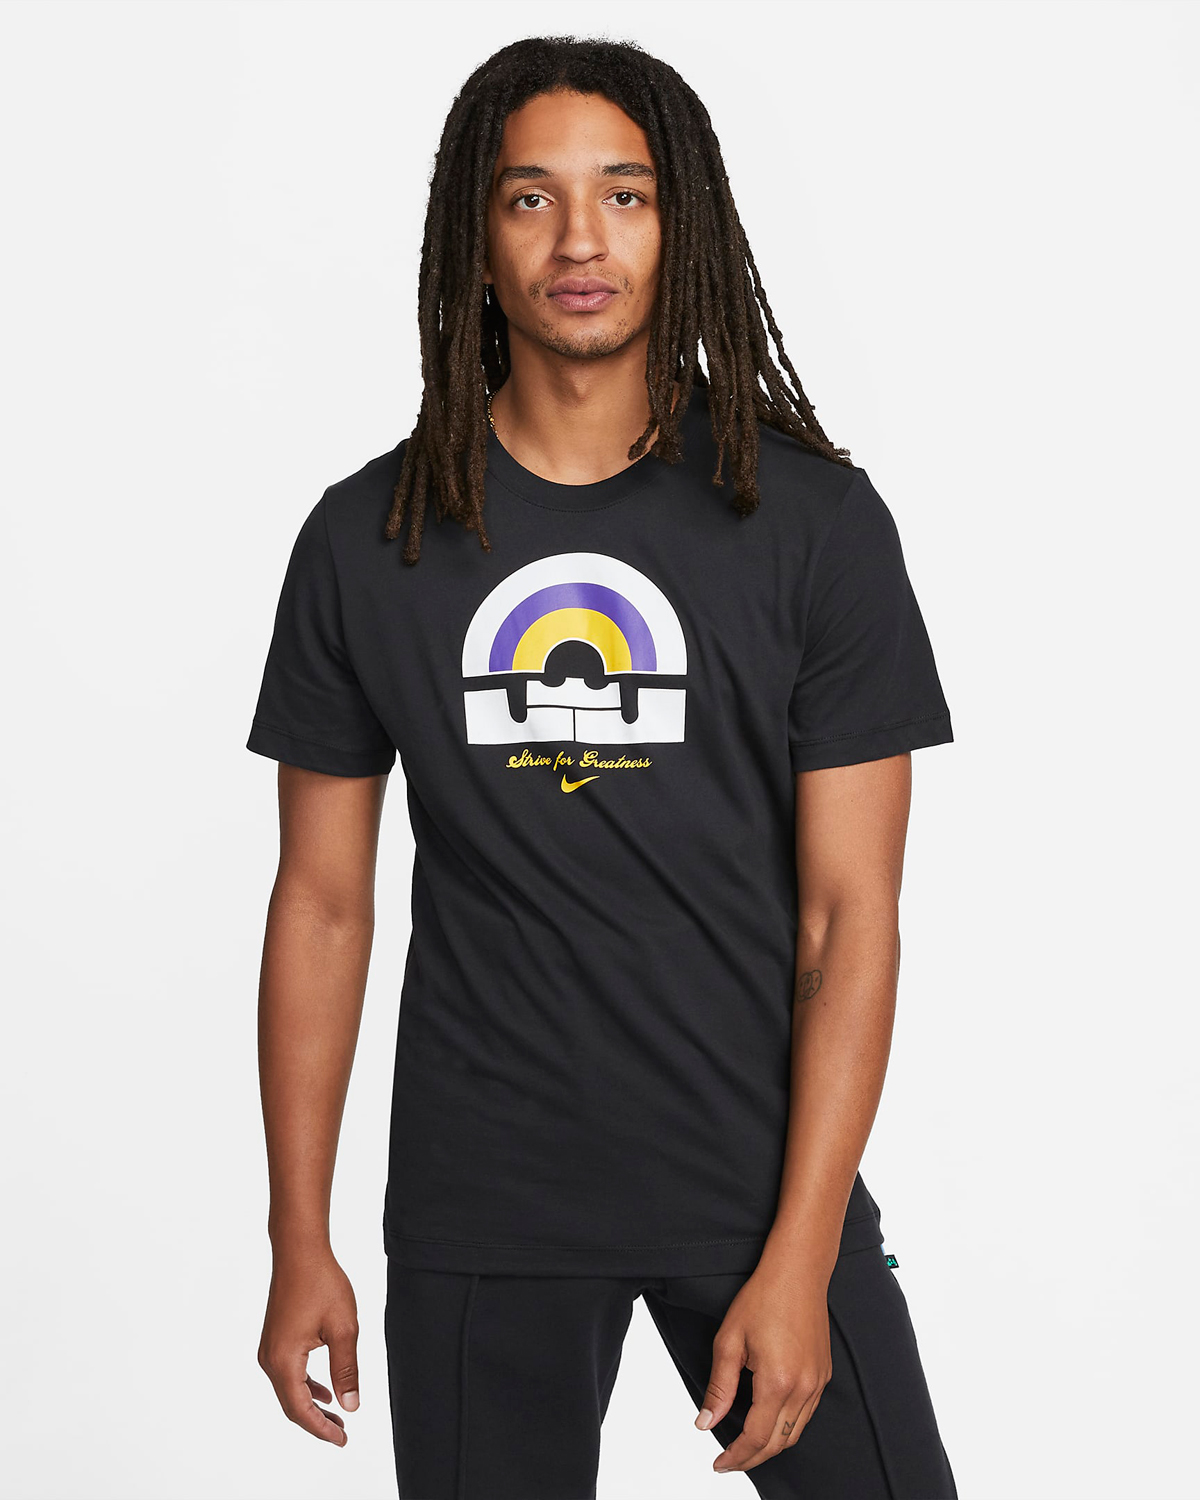 Nike-LeBron-20-T-Shirt-Black-Purple-Gold